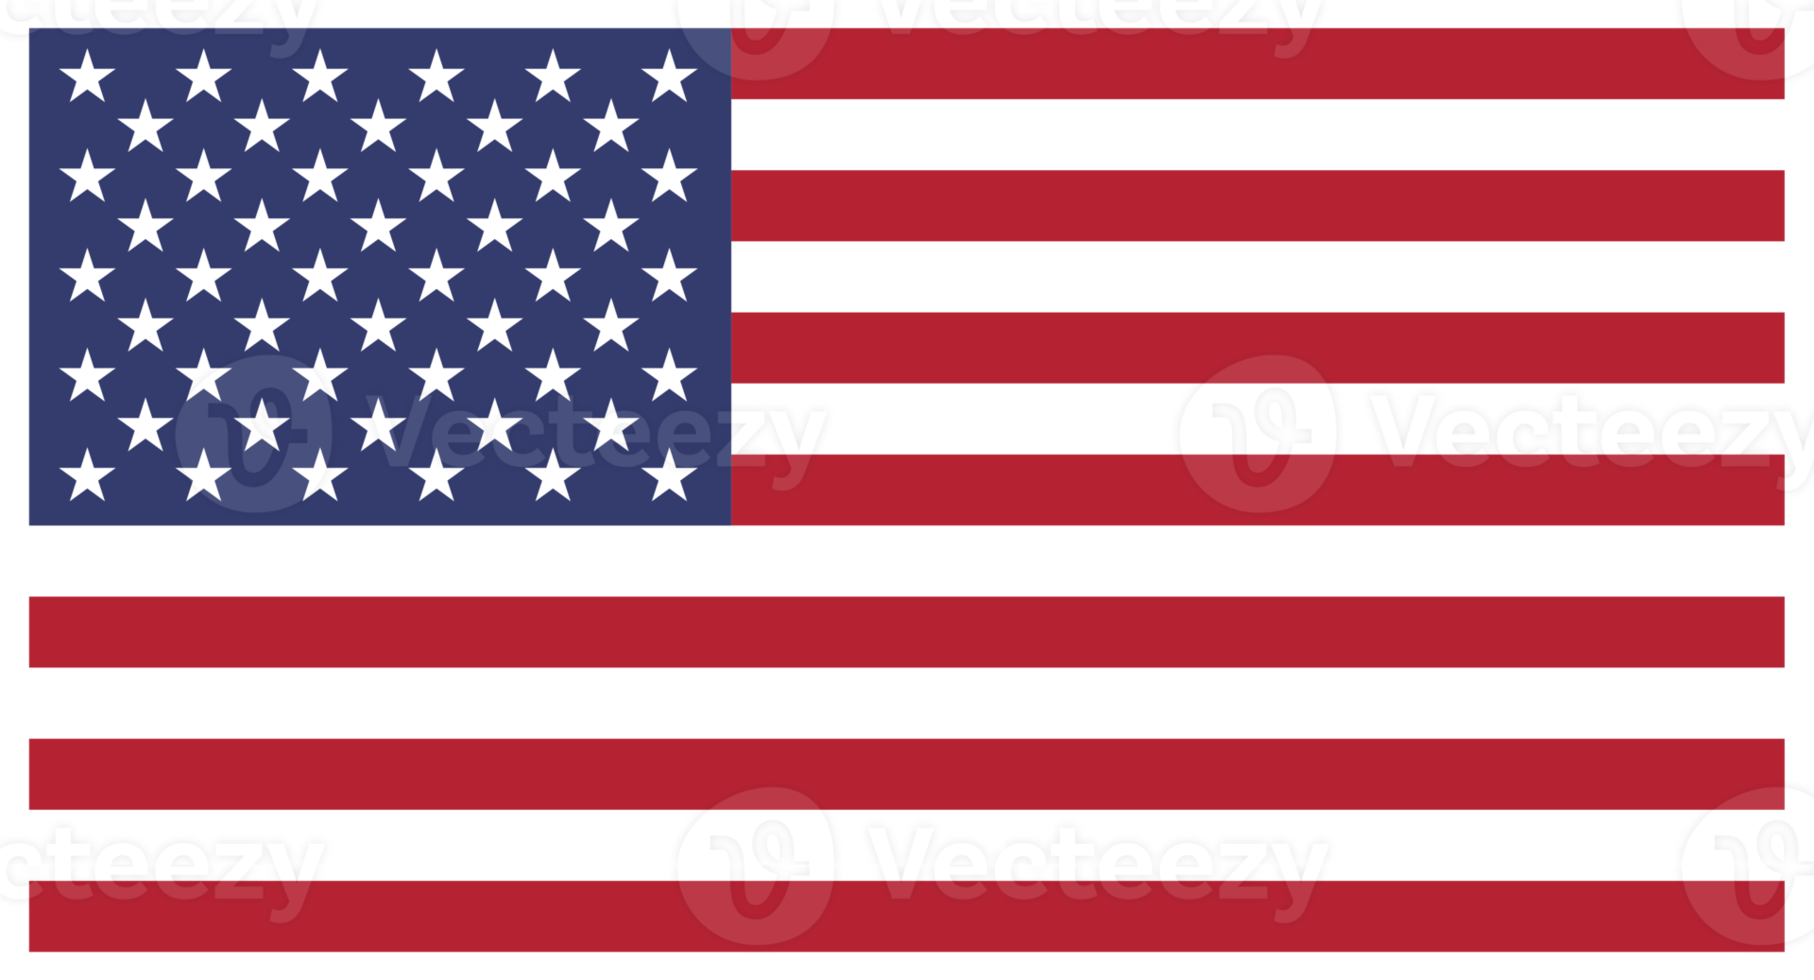 Torbellino referir Dificil bandera americana de estados unidos de america 10870761 PNG